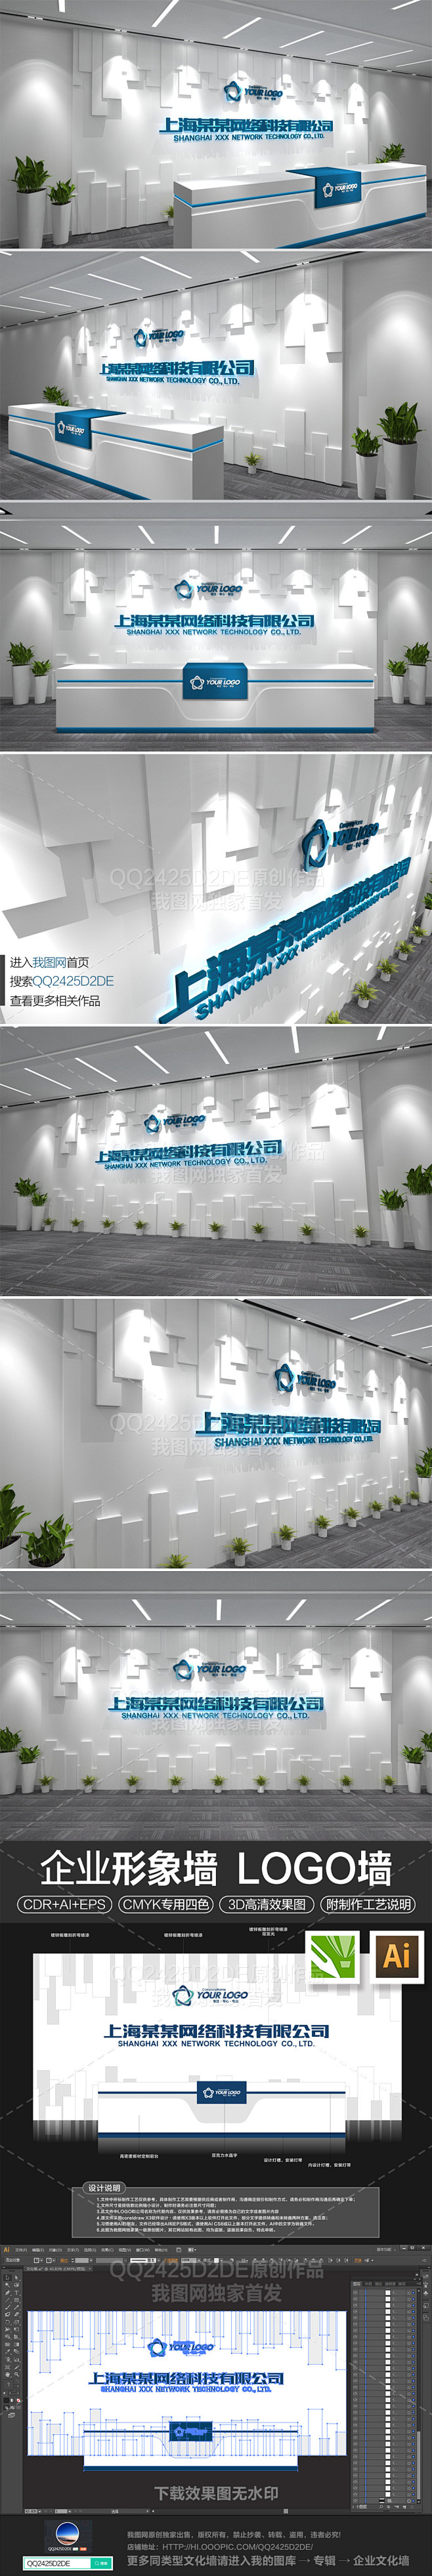 时尚企业形象墙logo墙前台接待台背景墙